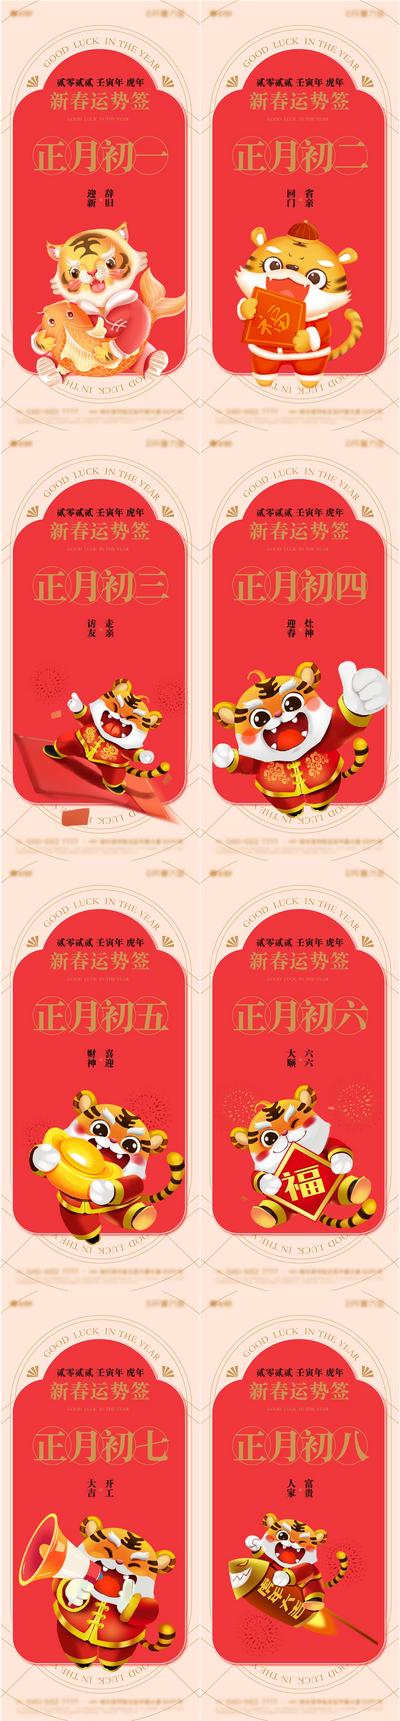 南门网 海报 中国传统节日 虎年 春节 过年 初一 初二 初三 初四 开工大吉 插画 创意 